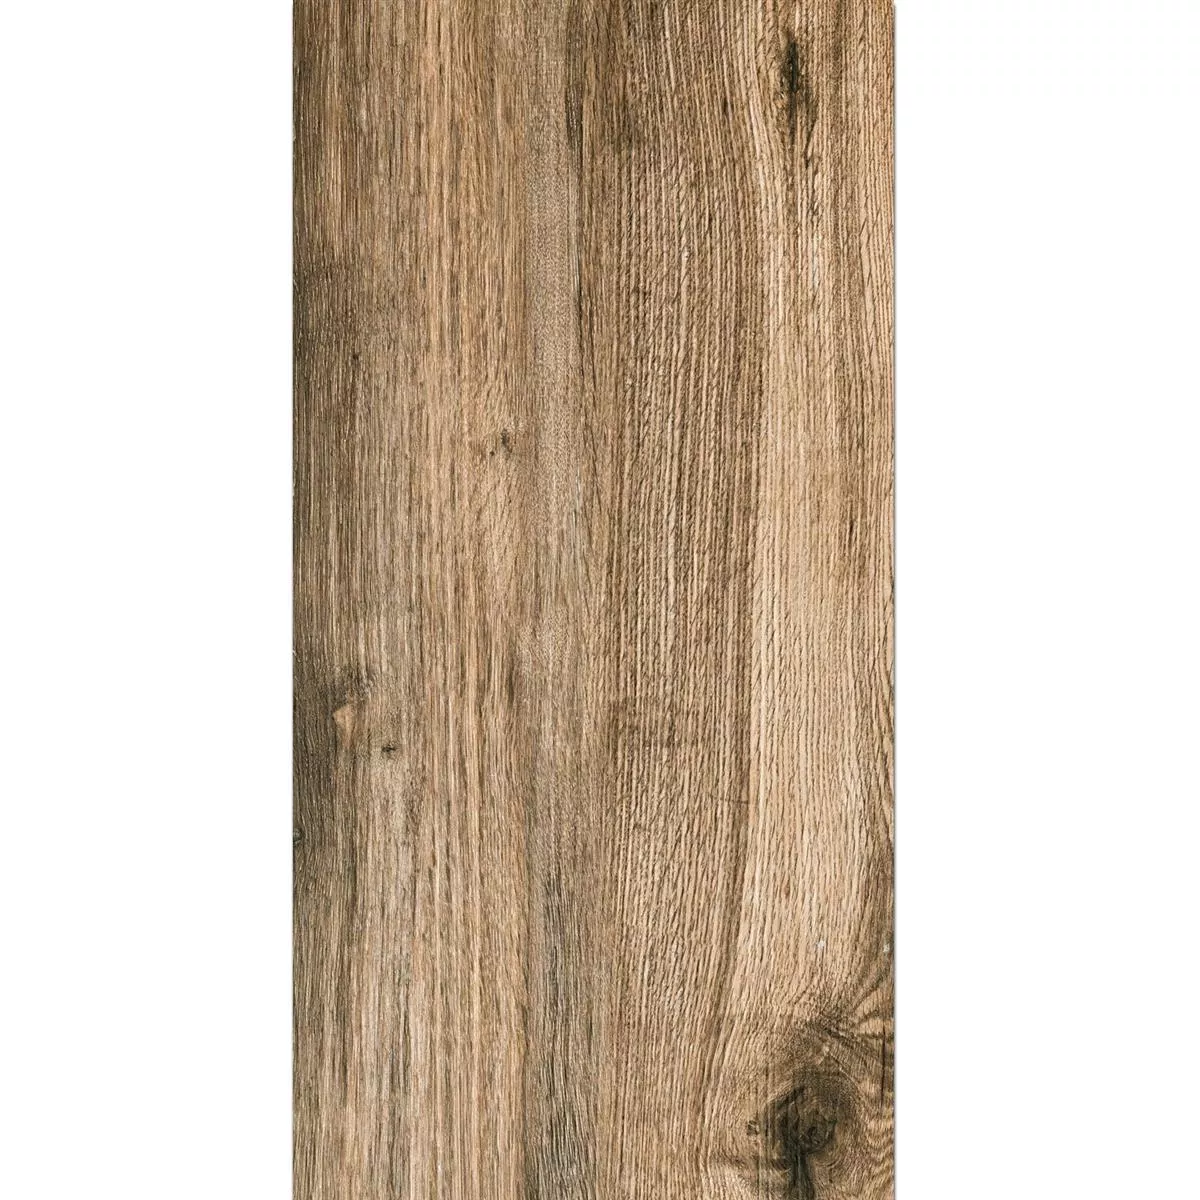 Piastrella Esterni Starwood Legno Ottica Oak 45x90cm